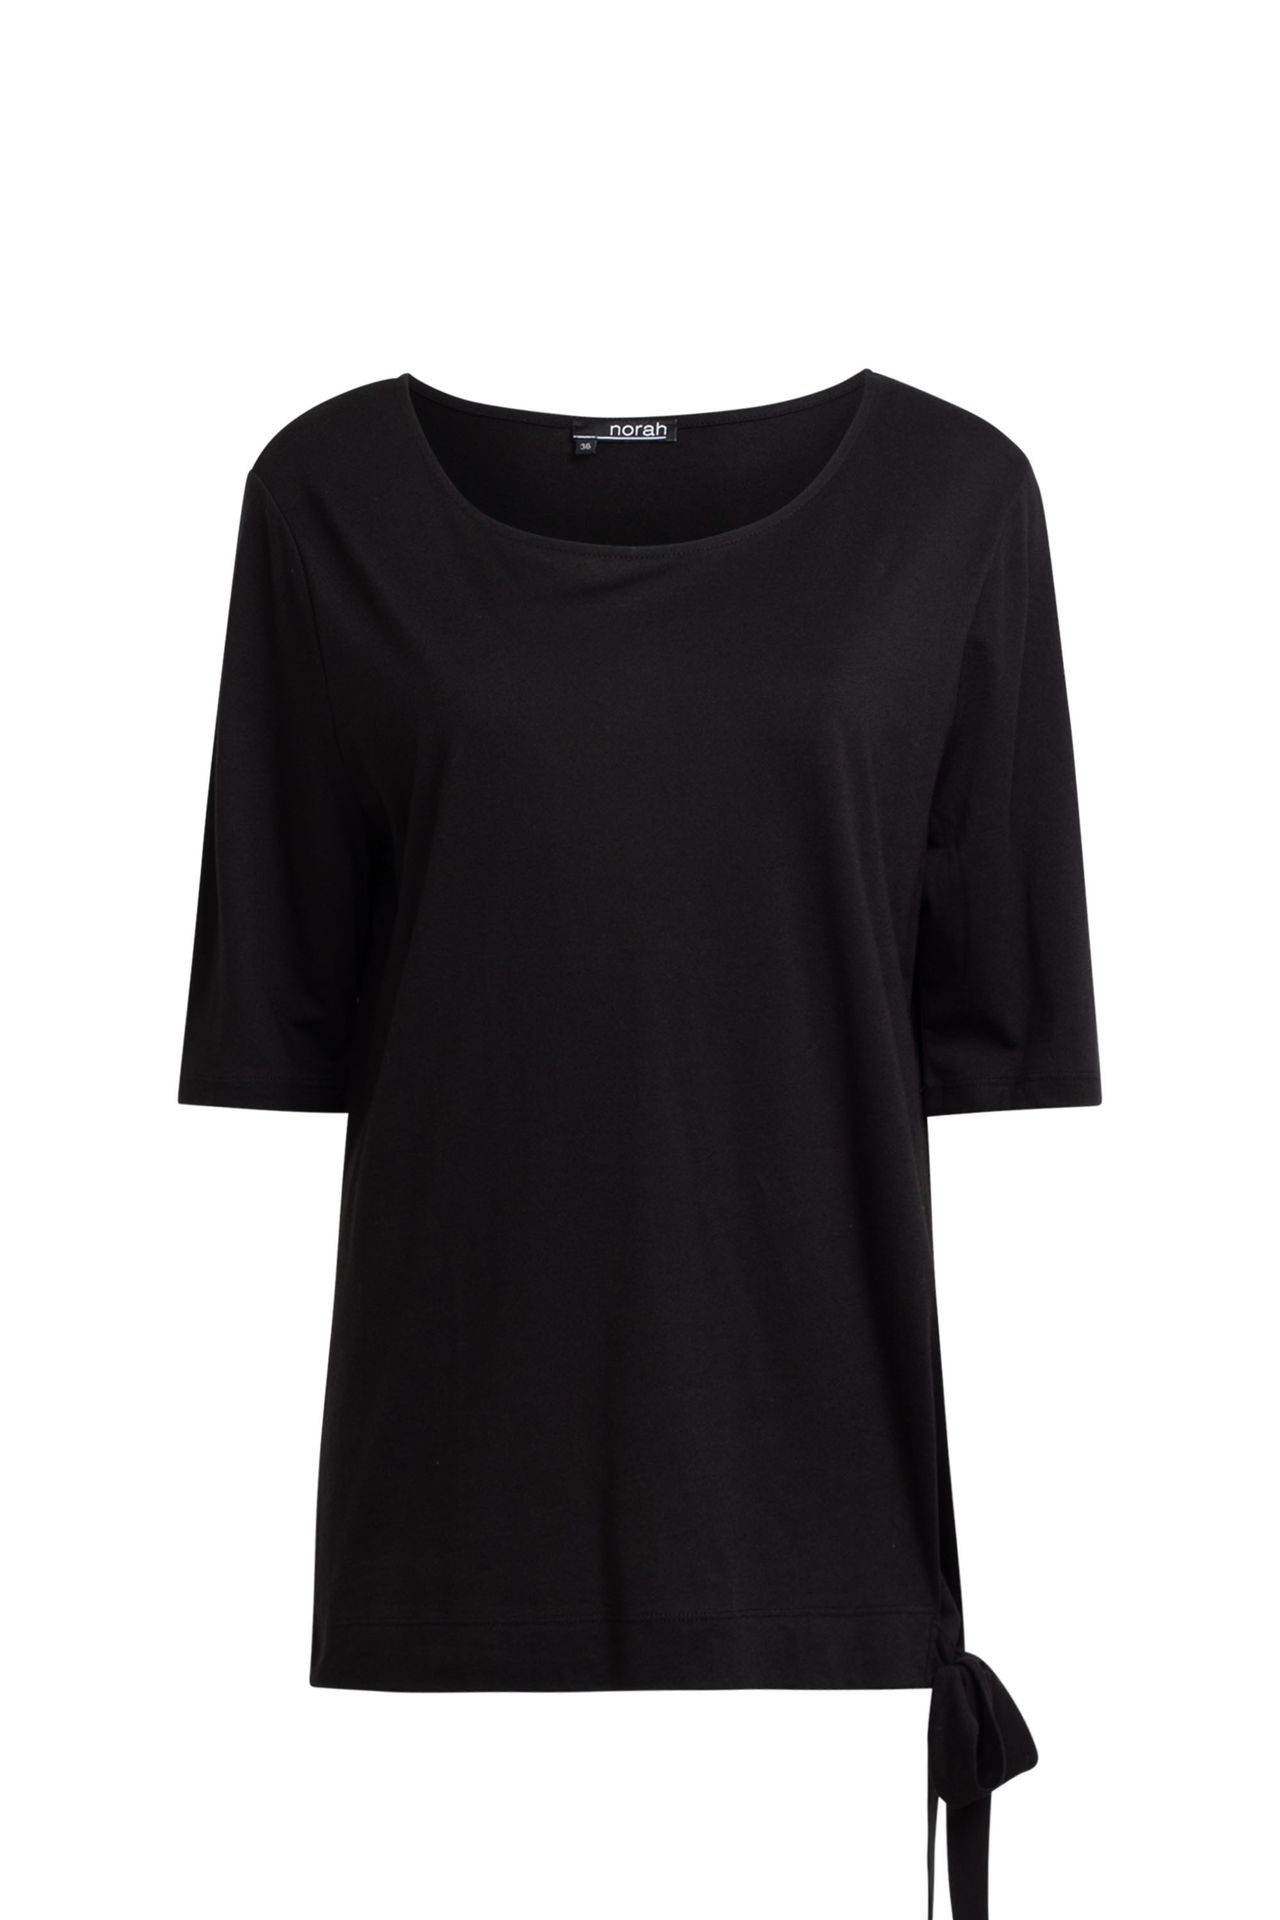 Norah Zwart shirt met strik black 209993-001